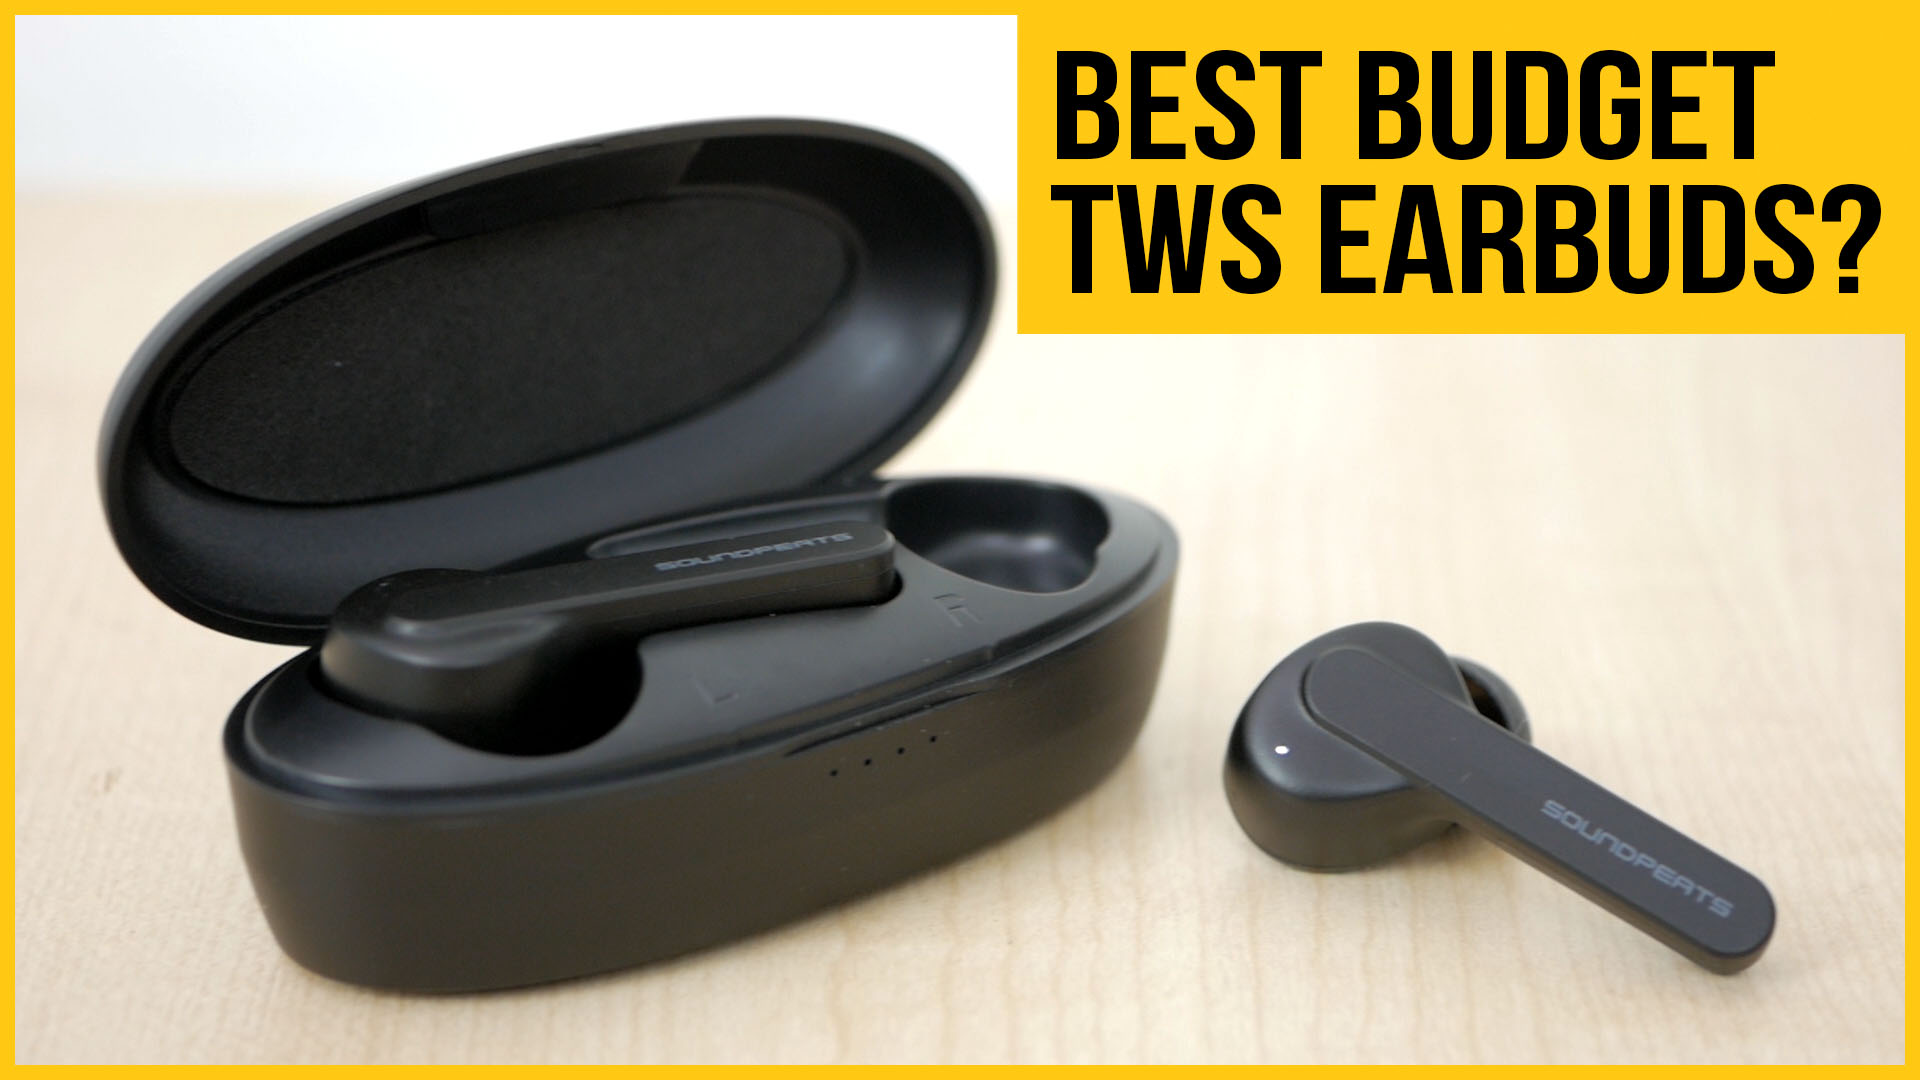 SoundPeats TrueCapsule True Wireless | Best budget TWS earbuds so far!